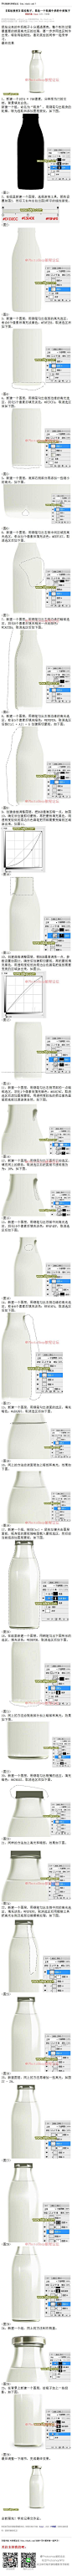 《鼠绘一个装满牛奶的牛奶瓶子》 鼠绘出来的牛奶瓶子十分通透漂亮，整个制作过程最重要的就是高光区的处理，要一步步用选区制作出来，特别考验耐性，喜欢鼠绘的同学一起来学习。 #www.16xx8.com##ps##photoshop##教程##ps教程##I鼠绘瓶子I#：http://www.16xx8.com/plus/view.php?aid=142044&pageno=all